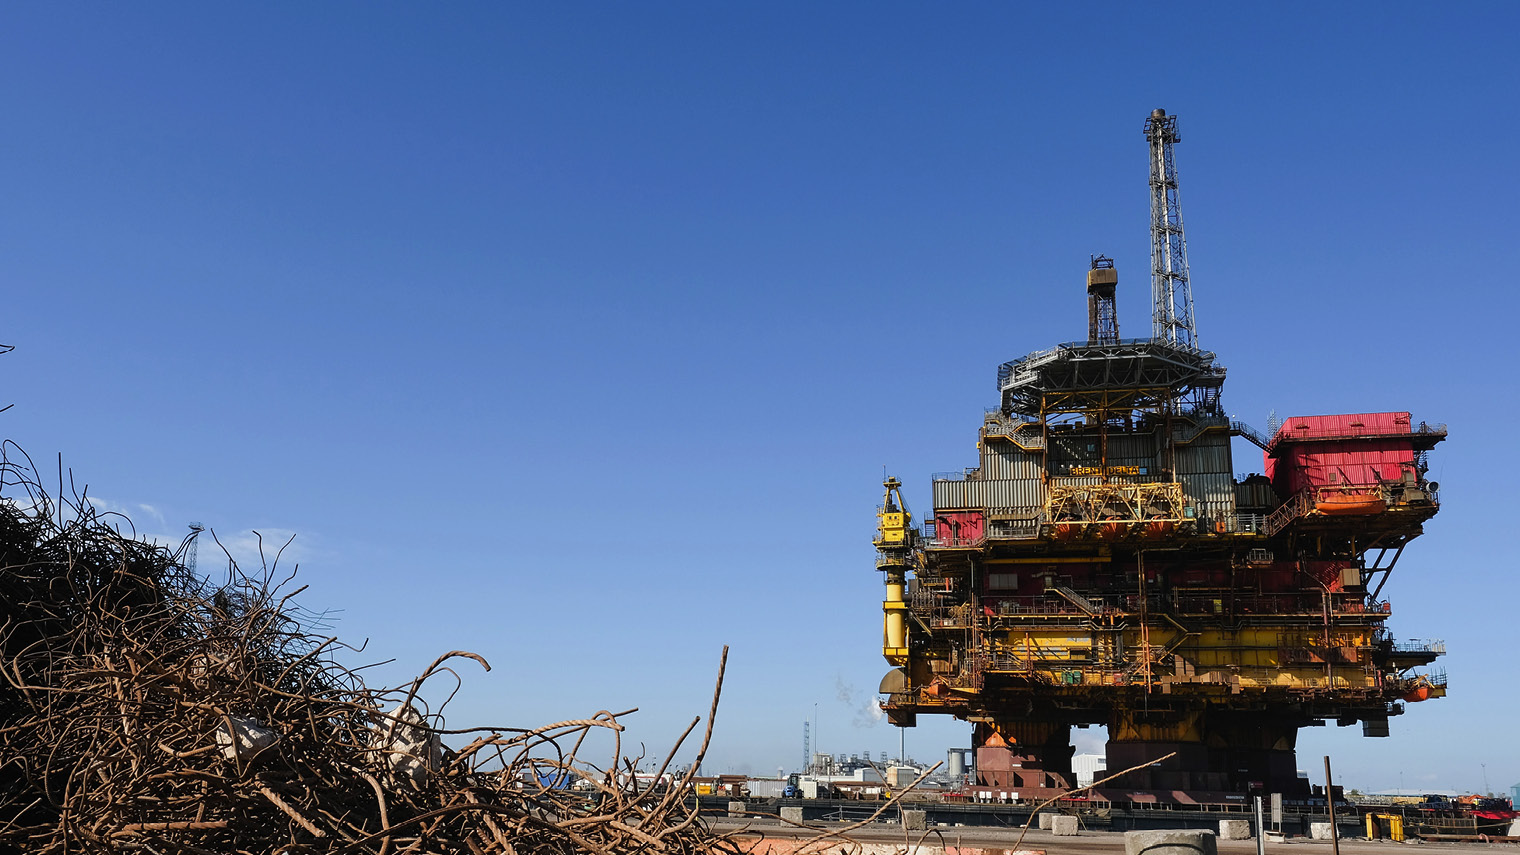 تصویر از سوال دارایی های متروک: آیا اکتشافات جدید نفت و گاز ارزش دارند؟